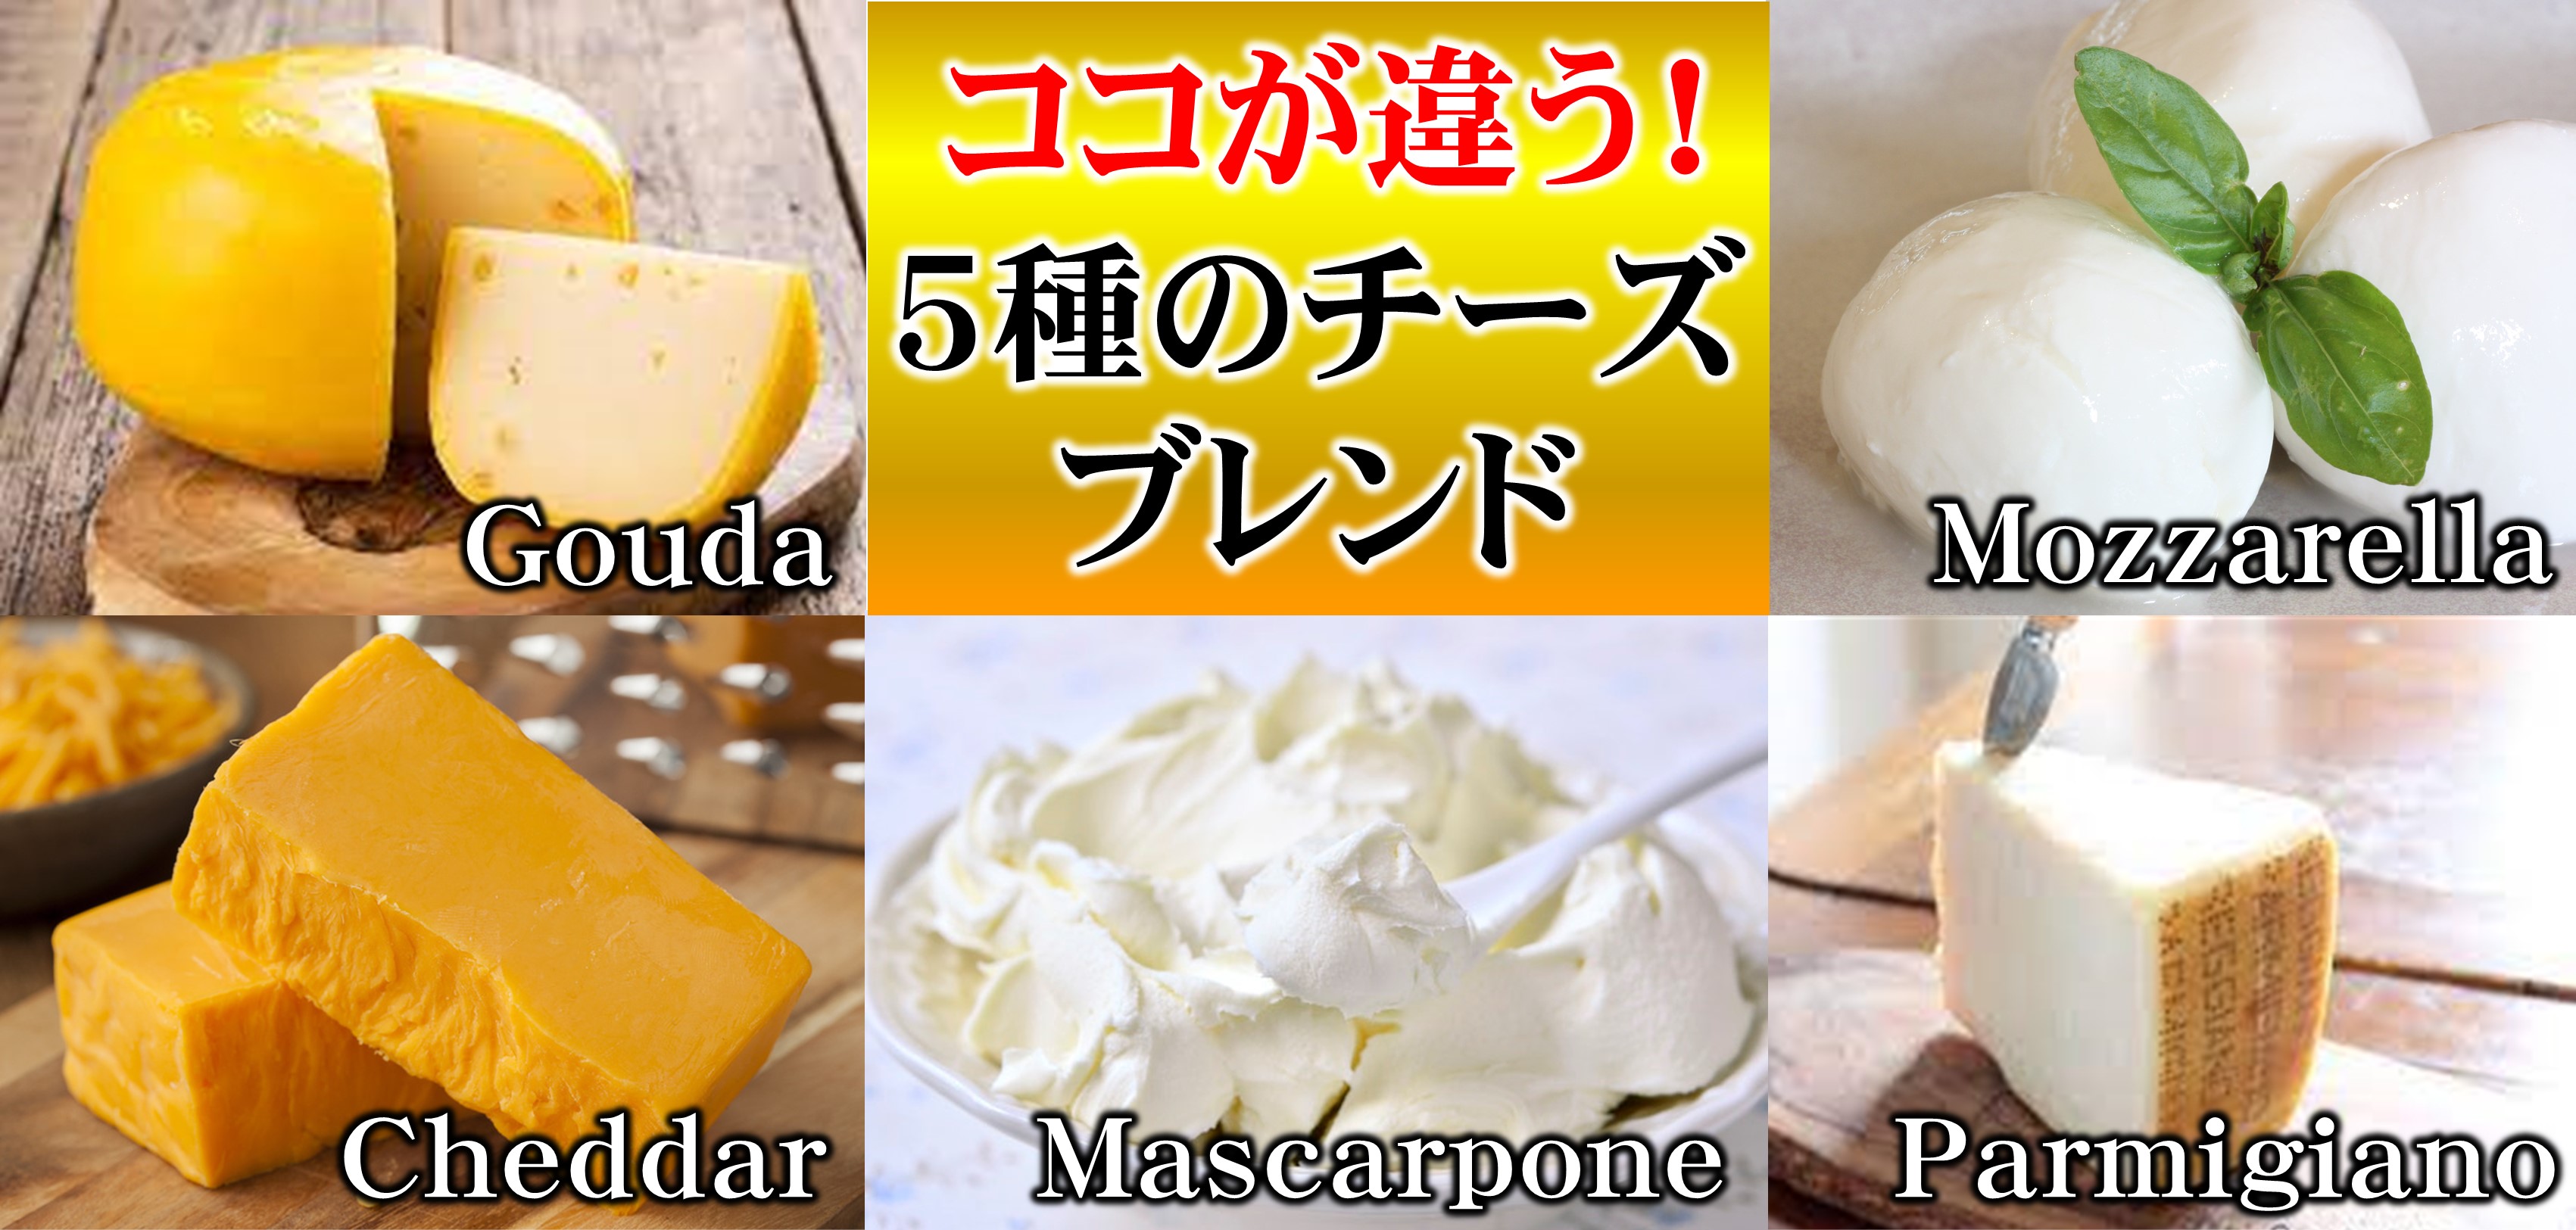 ここが違う5種のチーズブレンド